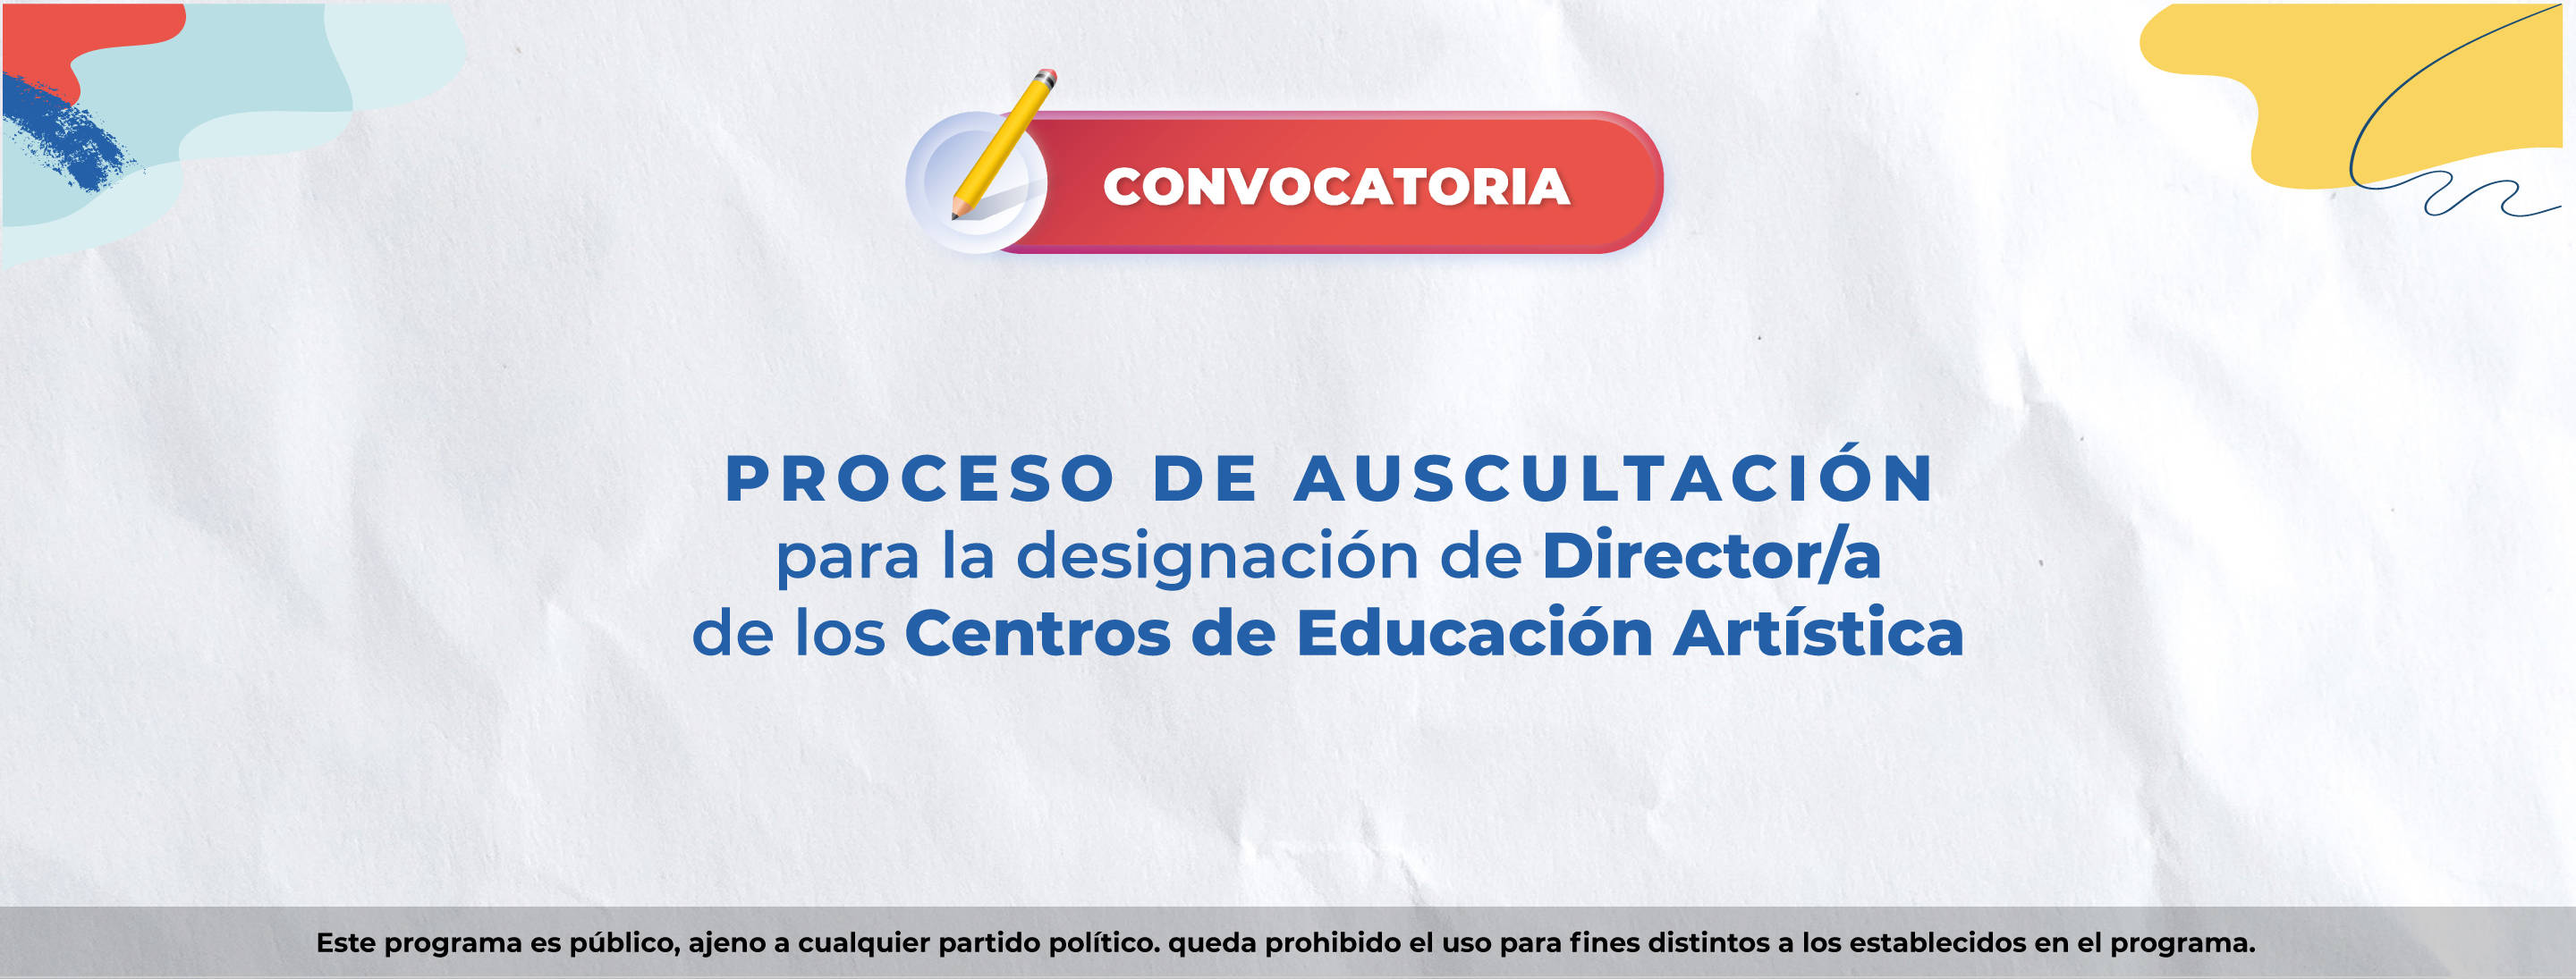 Proceso de auscultación para designación de director/a de los Centros de Educación Artística (Cedart)